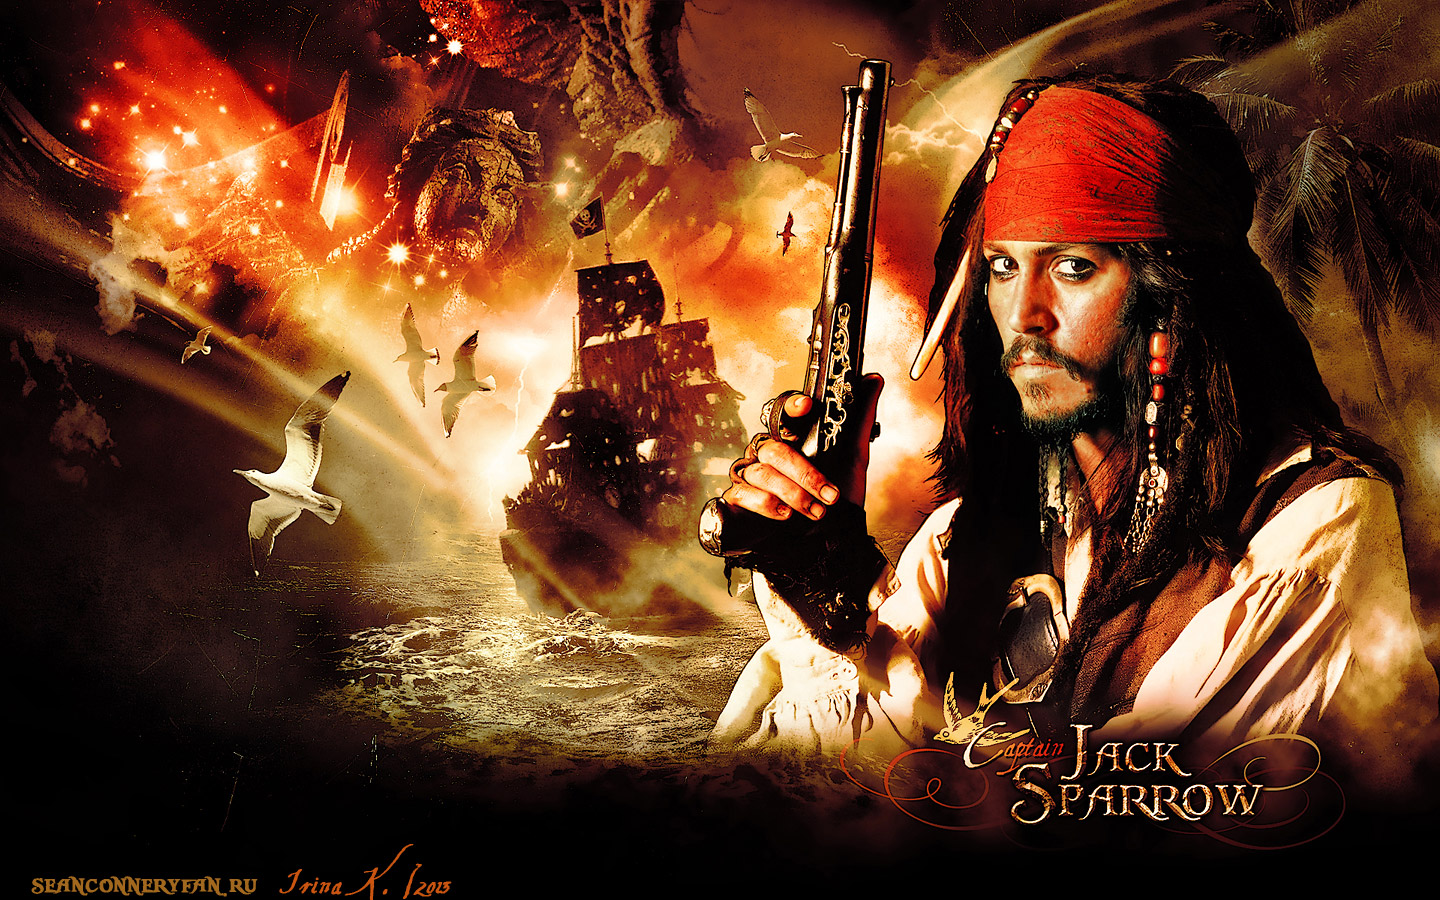 77+] Captain Jack Sparrow Wallpaper - WallpaperSafari